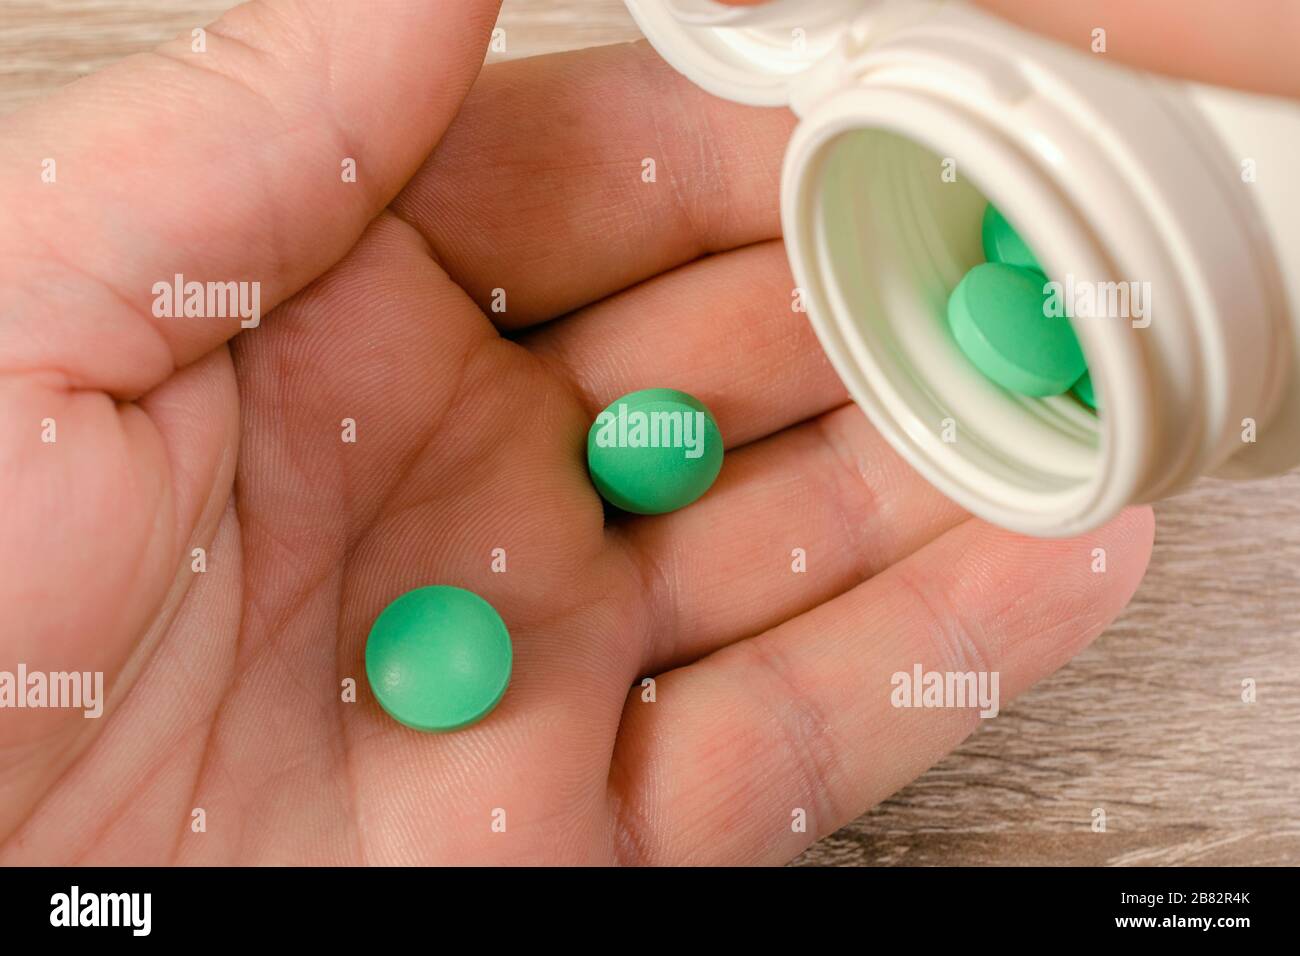 Die menschliche Hand nimmt grüne Pillen aus einem Glas oder einem Behälter. Gesundheit und Medizin. Nahaufnahme. Makro. Stockfoto